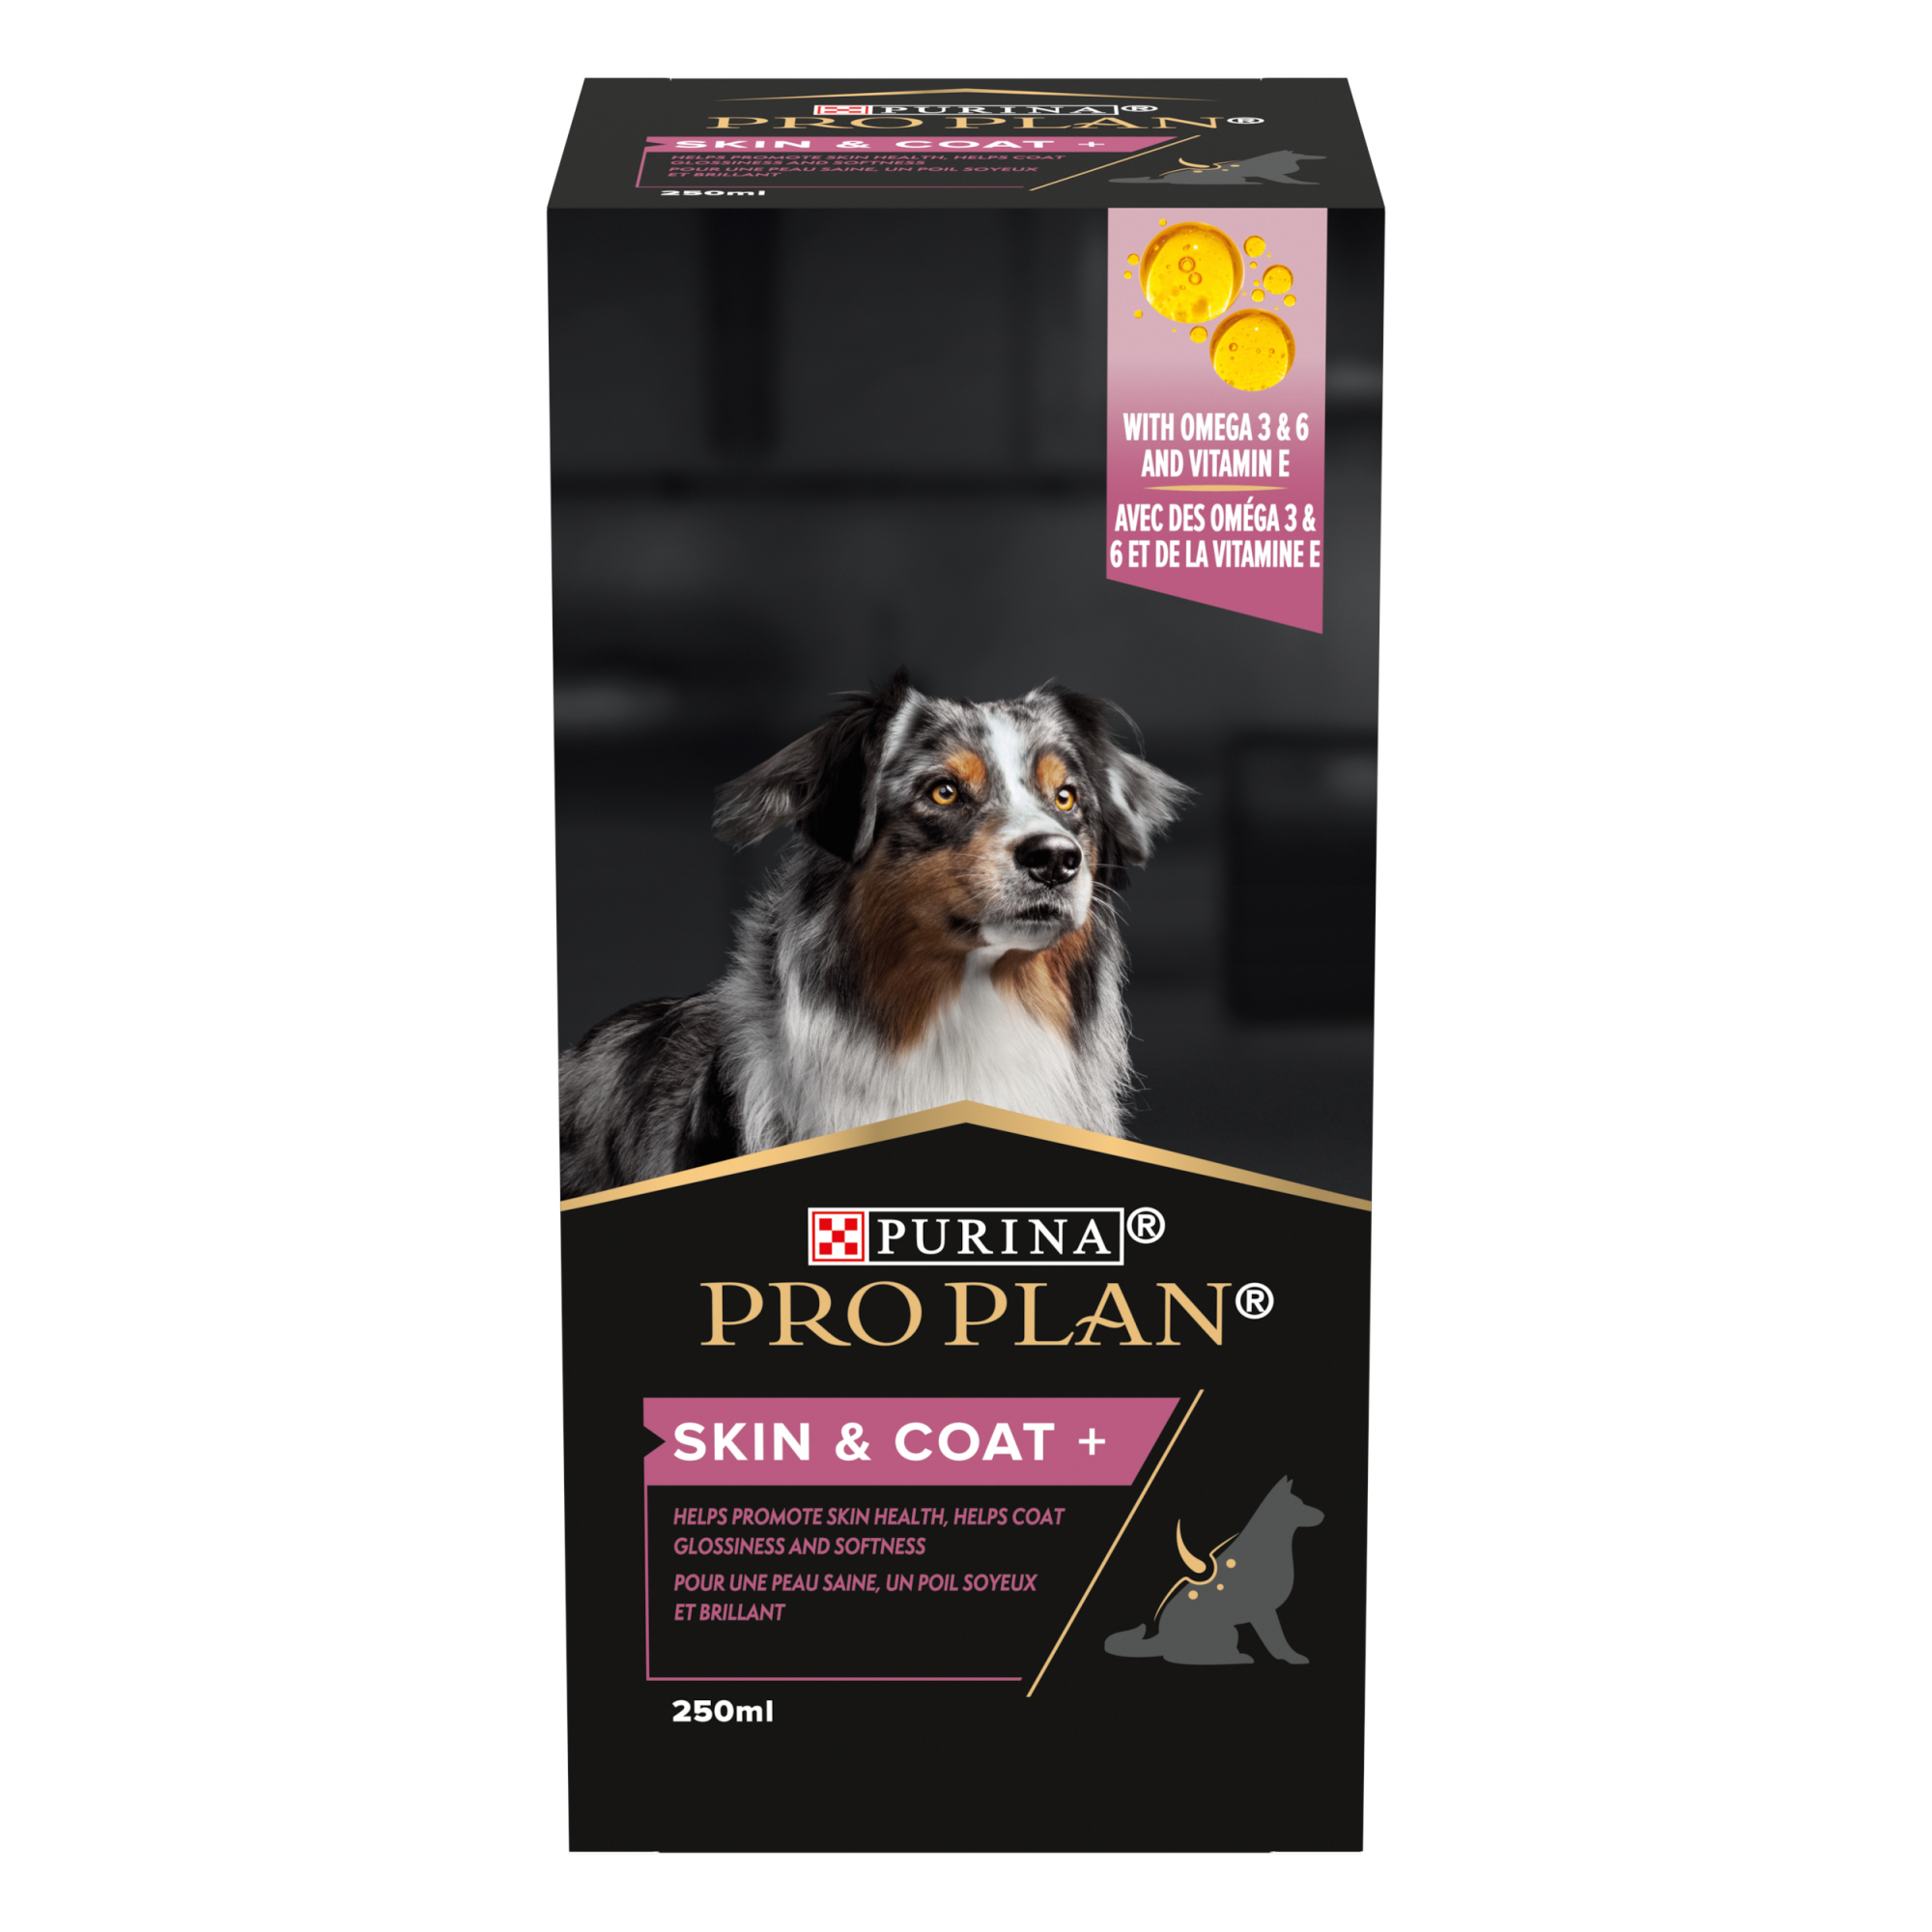 Purina Pro Plan Skin & Coat+ aliment complémentaire huile pour chien